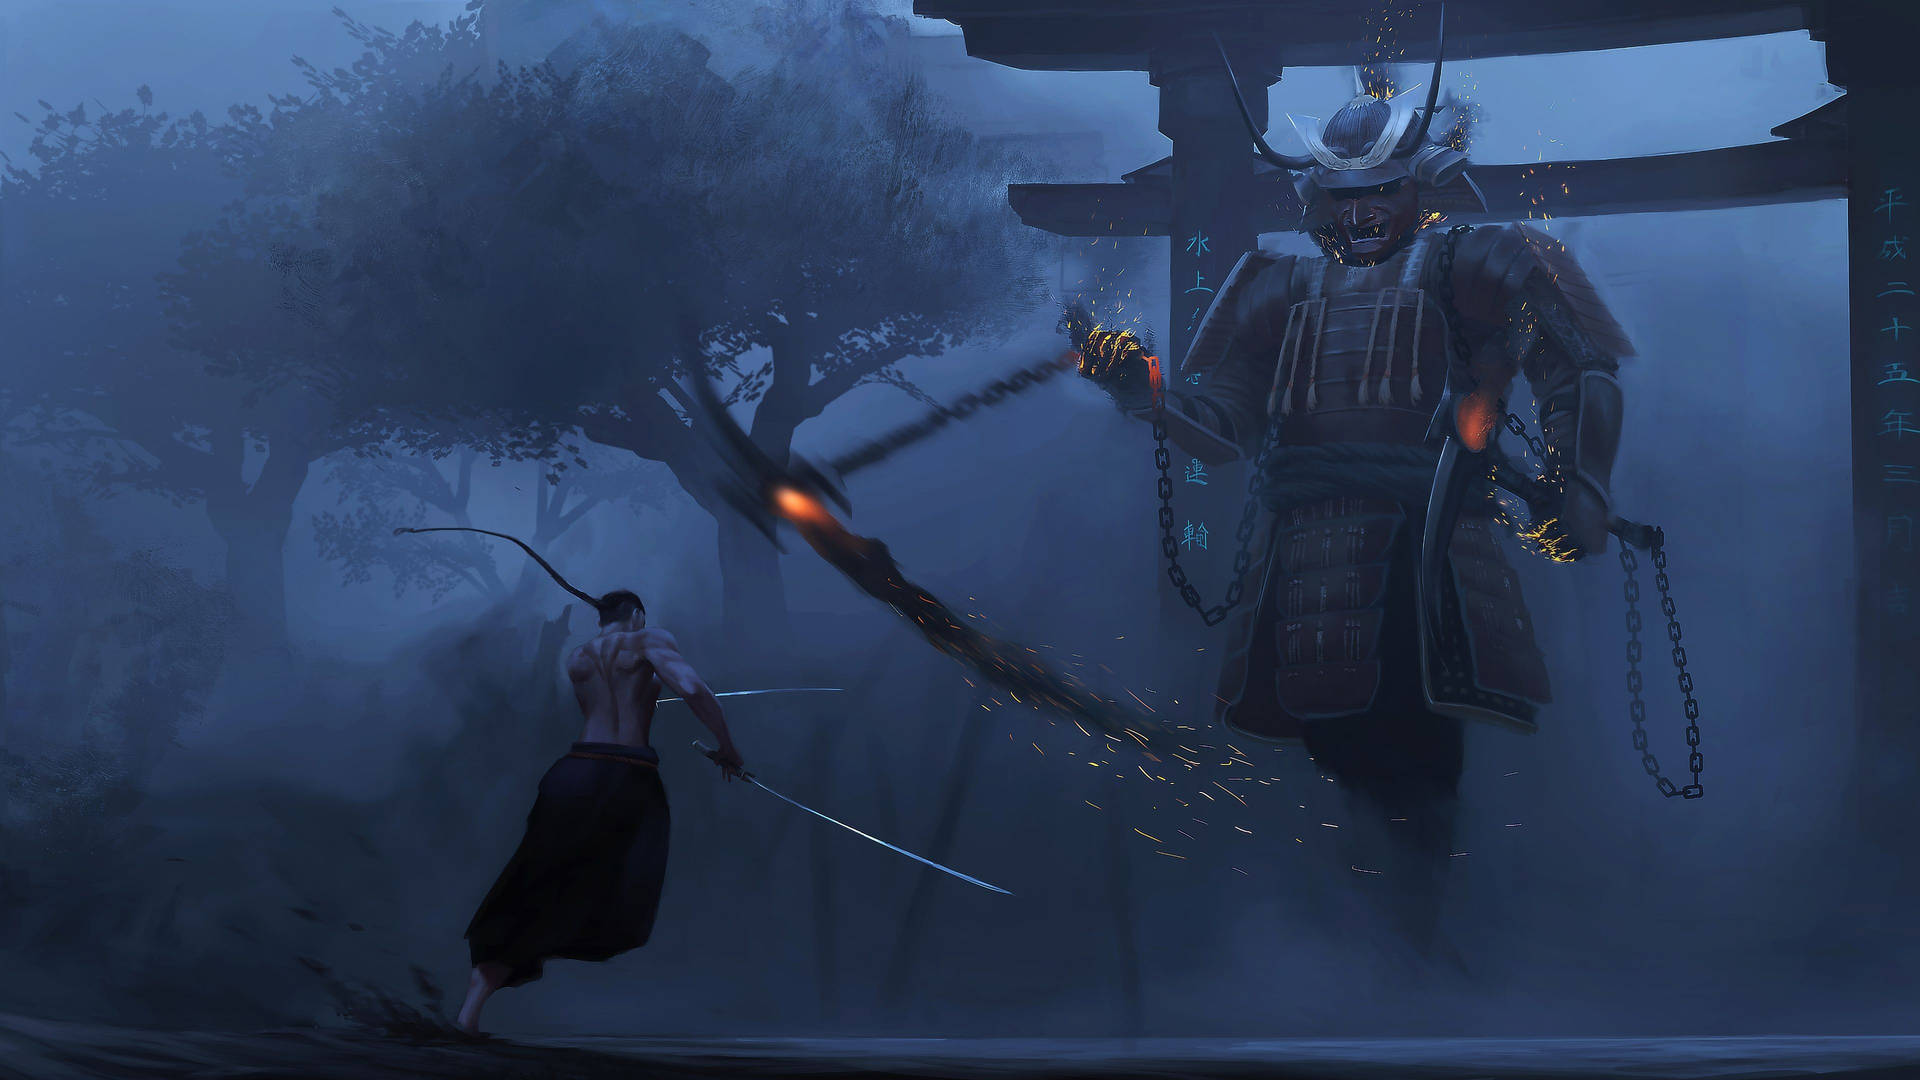 Samurajkrigaresom Står I Tokyo På Kvällen. Wallpaper